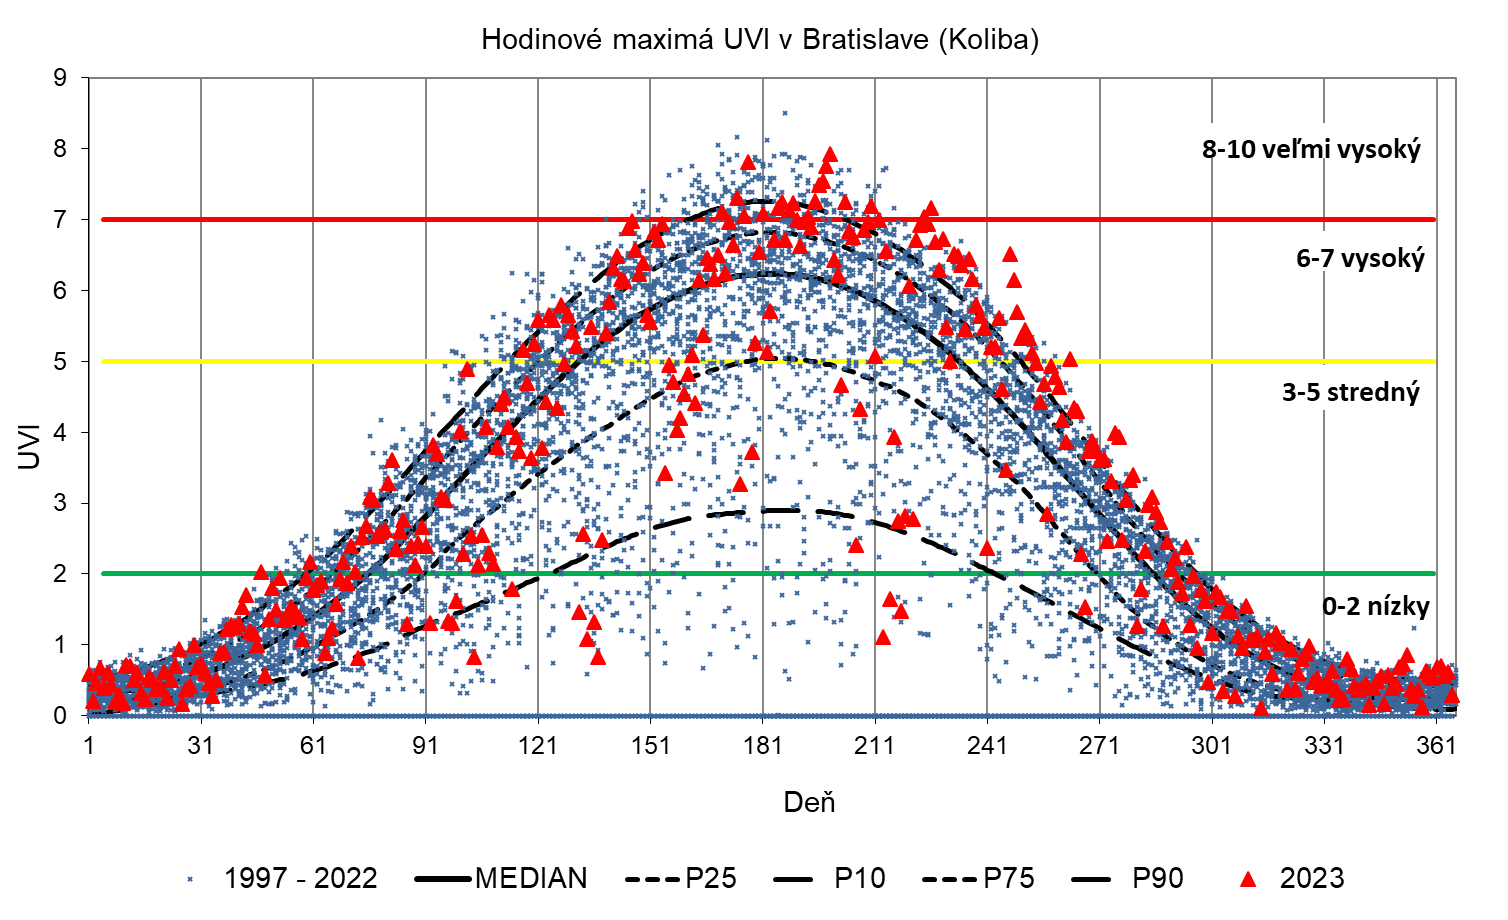 Obrázok 6. Maximálne hodinové priemery UVI v Bratislave (hore) za obdobie 1997 – 2021 a v Gánovciach (dolu) za obdobie 1999 – 2021 (modrá značka) a v roku 2022 (červené značky), vyjadrené vzhľadom na zhladený MEDIÁN (medián predstavuje limit, pri ktorom sa vyššie aj nižšie hodnoty ako medián vyskytujú s rovnakou pravdepodobnosťou 50%) a vybrané percentily P90, P75, P25 a P10 (pravdepodobnosť, že daný údaj prekročí hodnotu P90, je 10%, P75 je 25%,  pravdepodobnosť, že daný údaj bude menší ako hodnota P25, je 25% a  P10 je 10%). Štatistické charakteristiky sú za obdobie 2000 – 2019. V grafe sú vyznačené limity intervalov UVI, pre ktoré WHO odporúča príslušný stupeň ochrany pred slnečným UV žiarením.